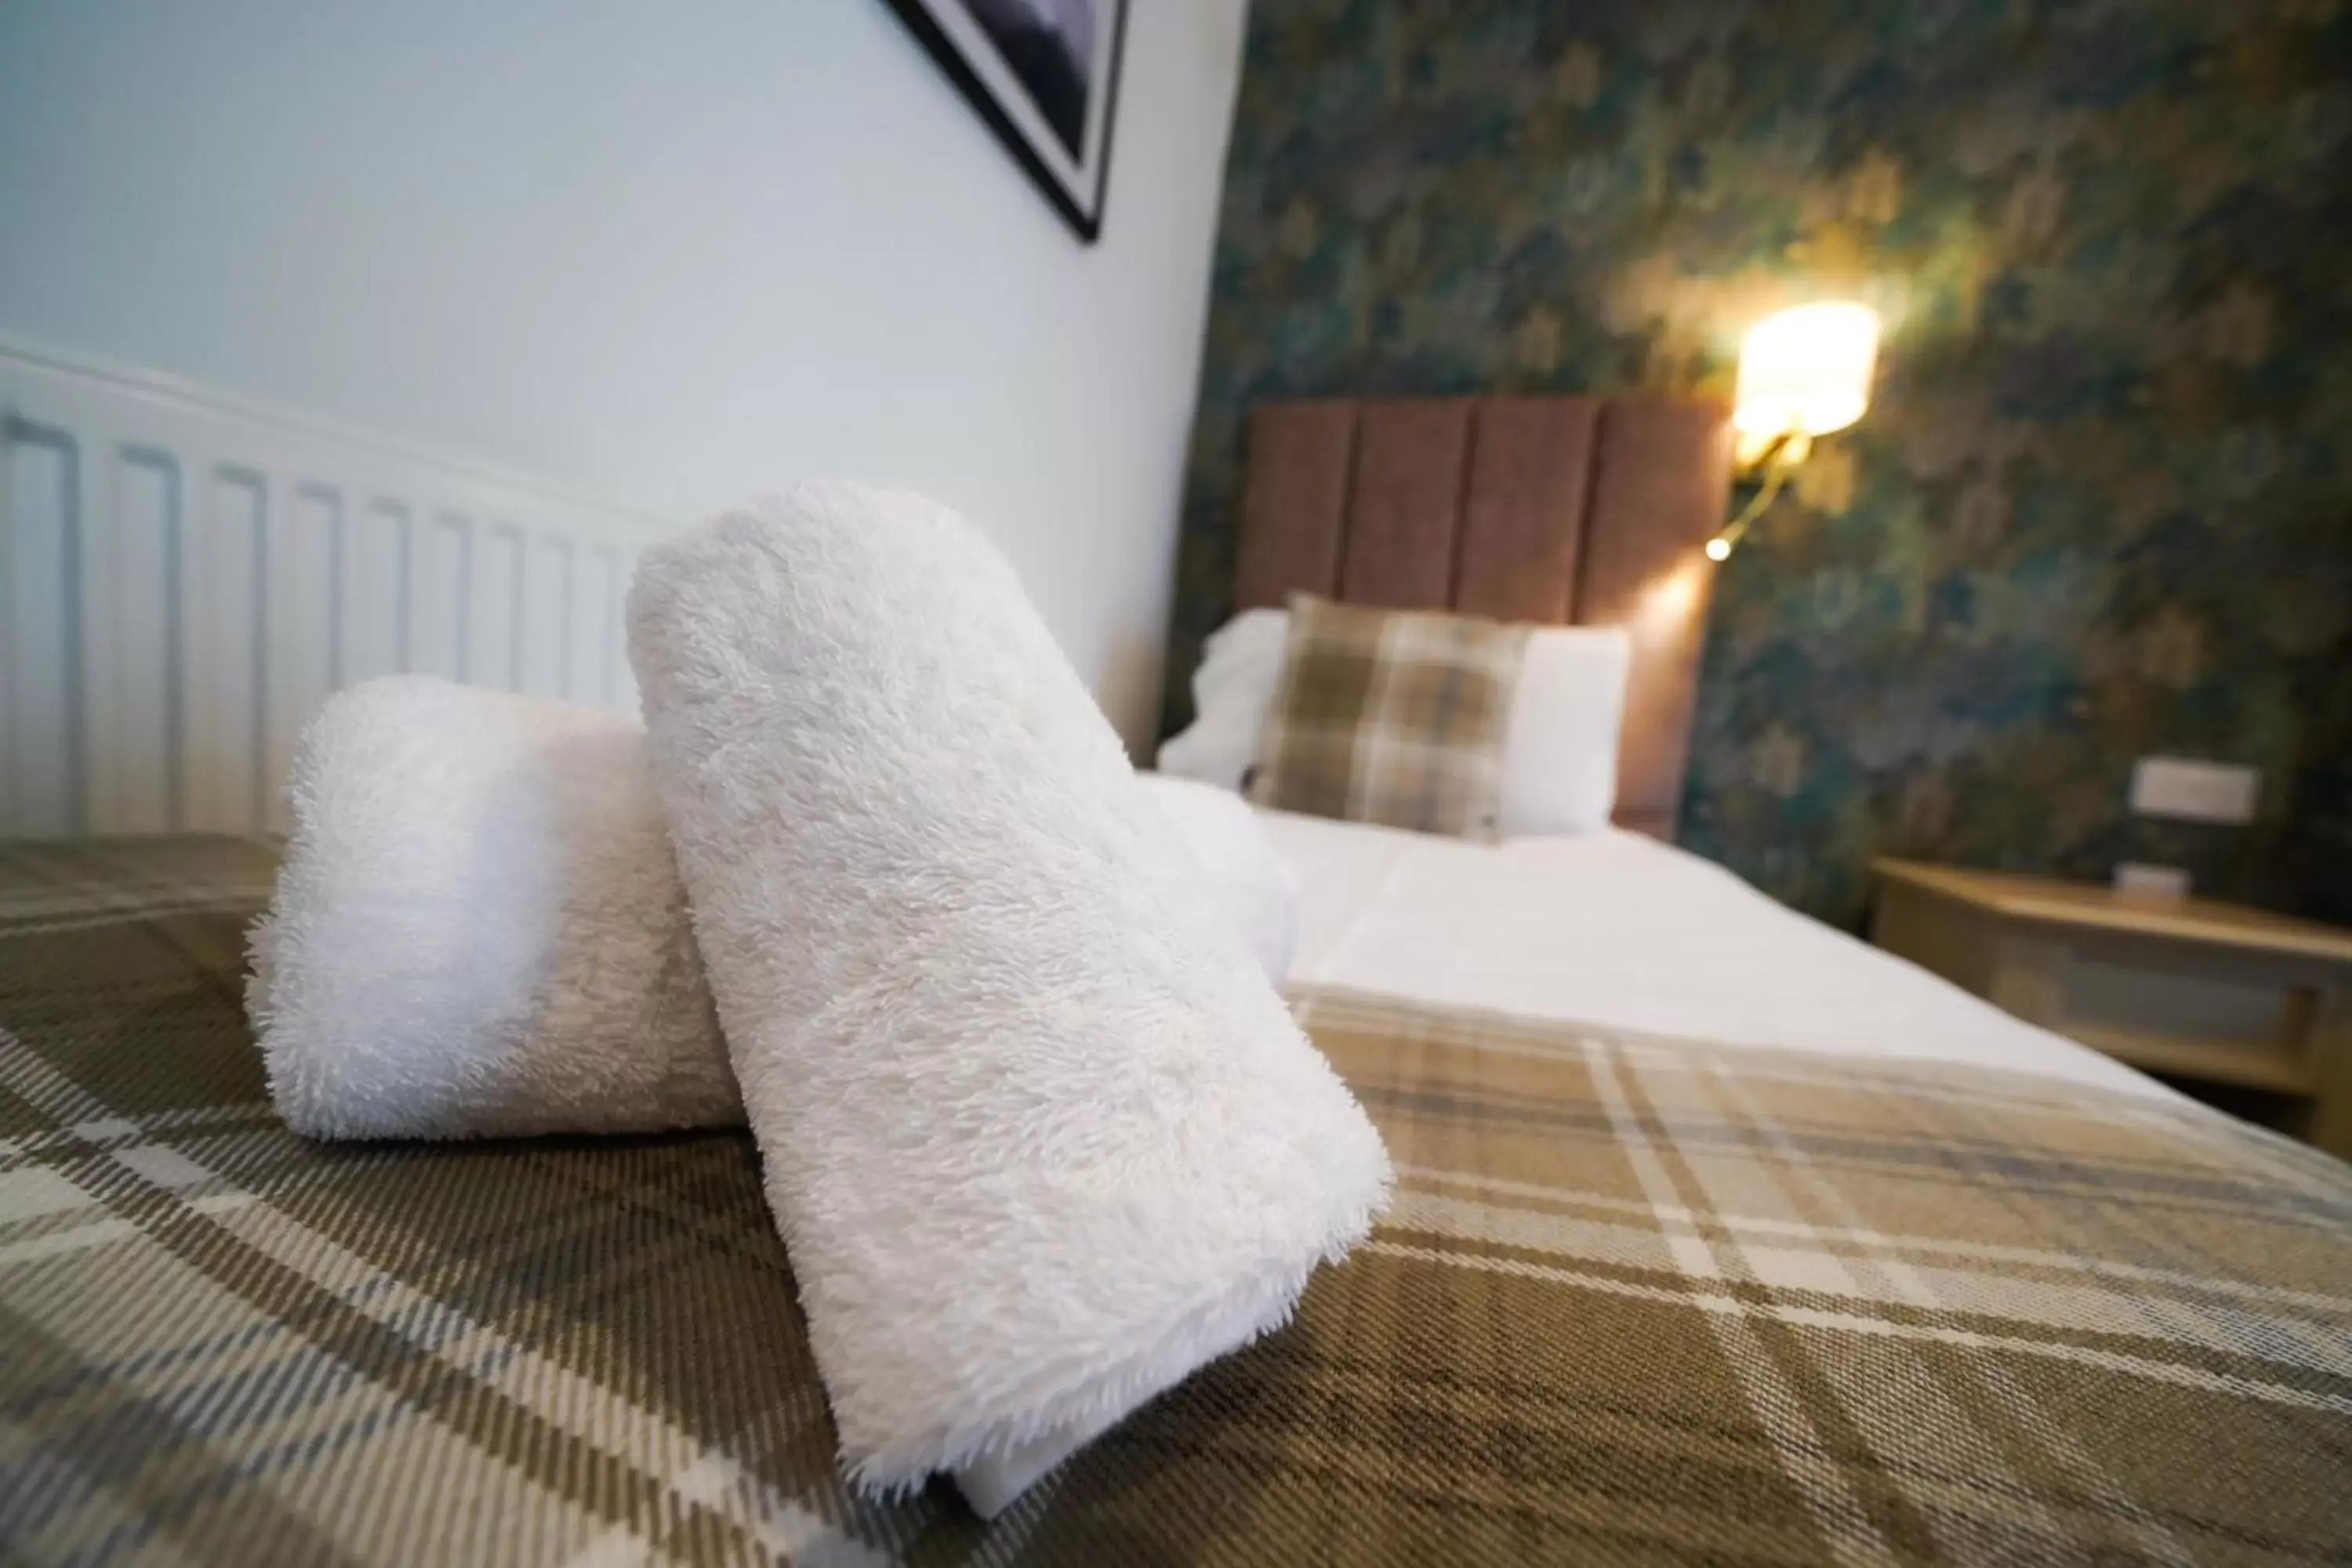 Bed in Gwydyr Hotel